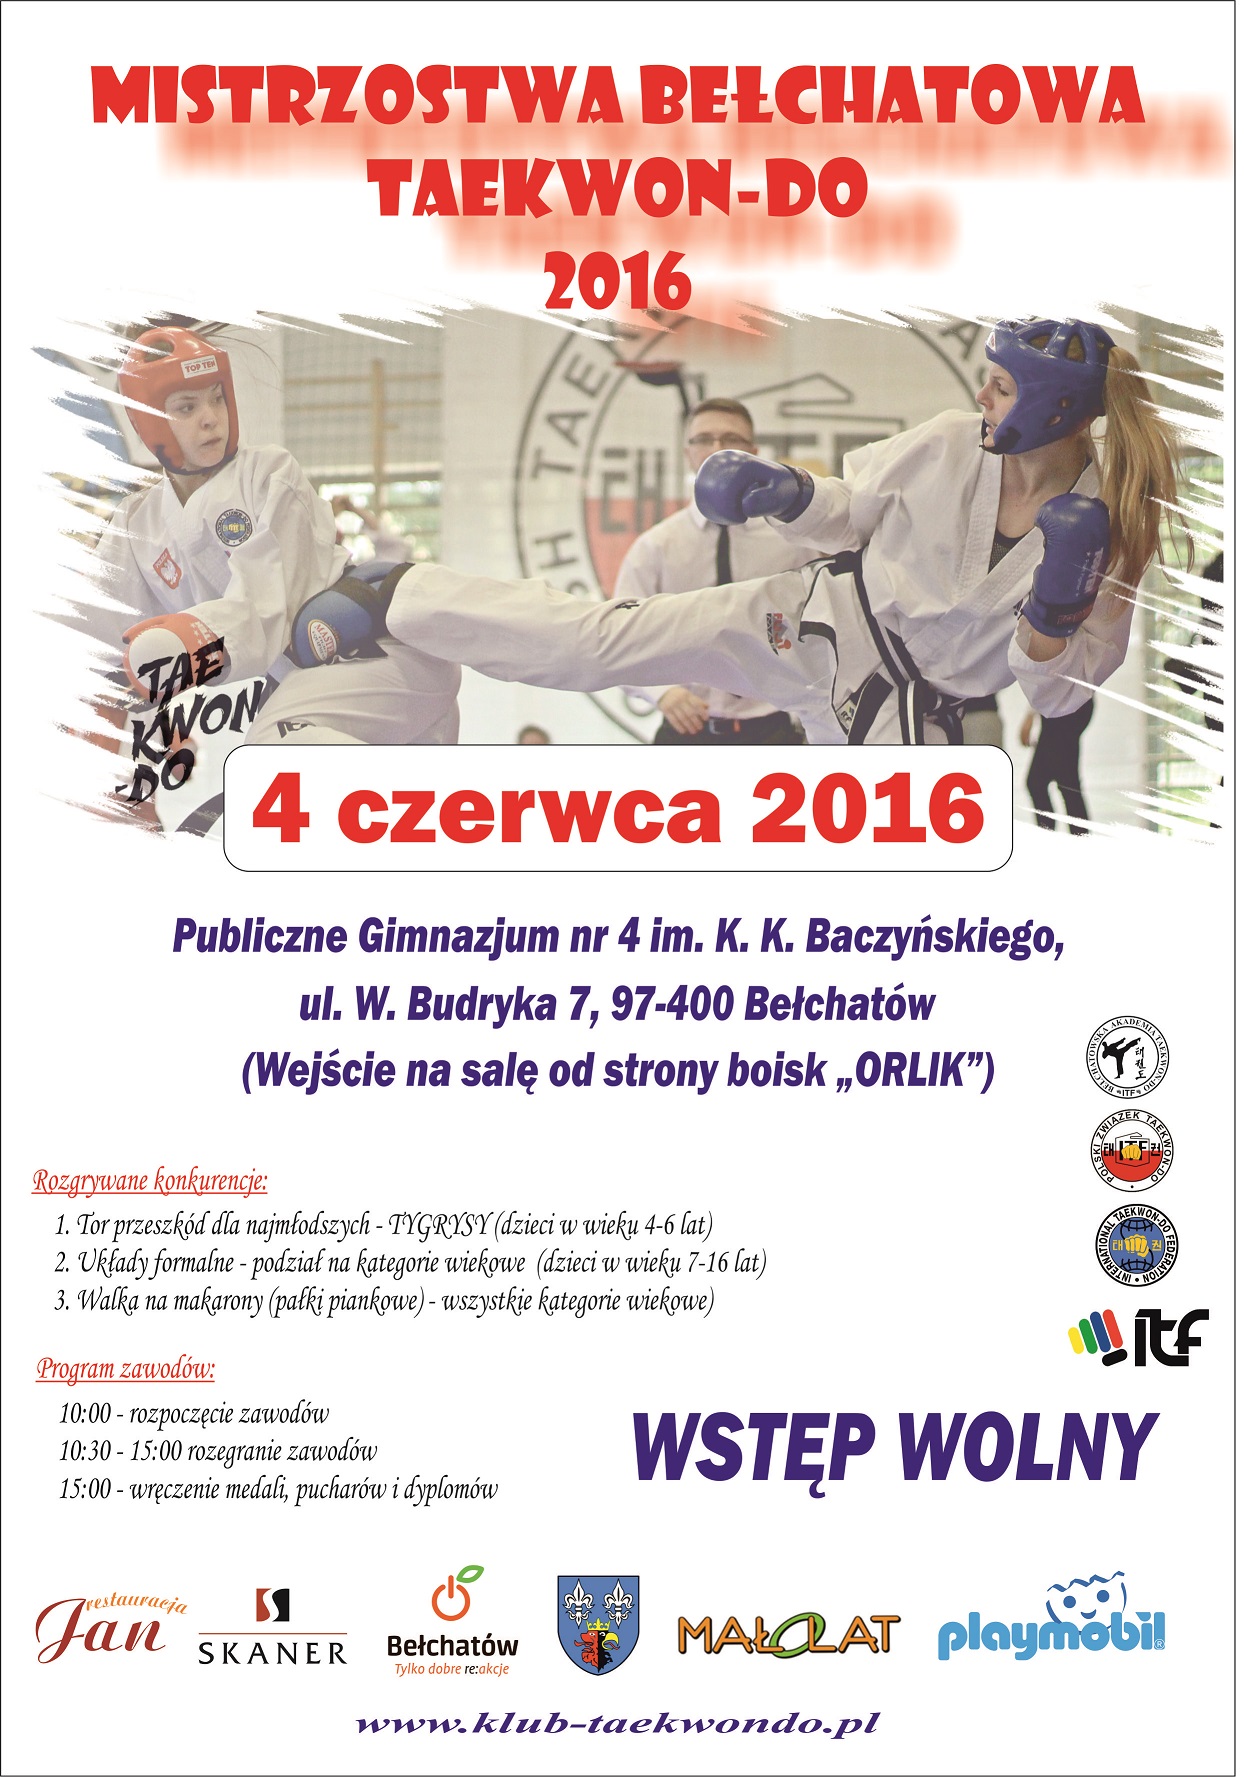 PLAKAT 2016 - Mistrzostwa Bełchatowa TKD